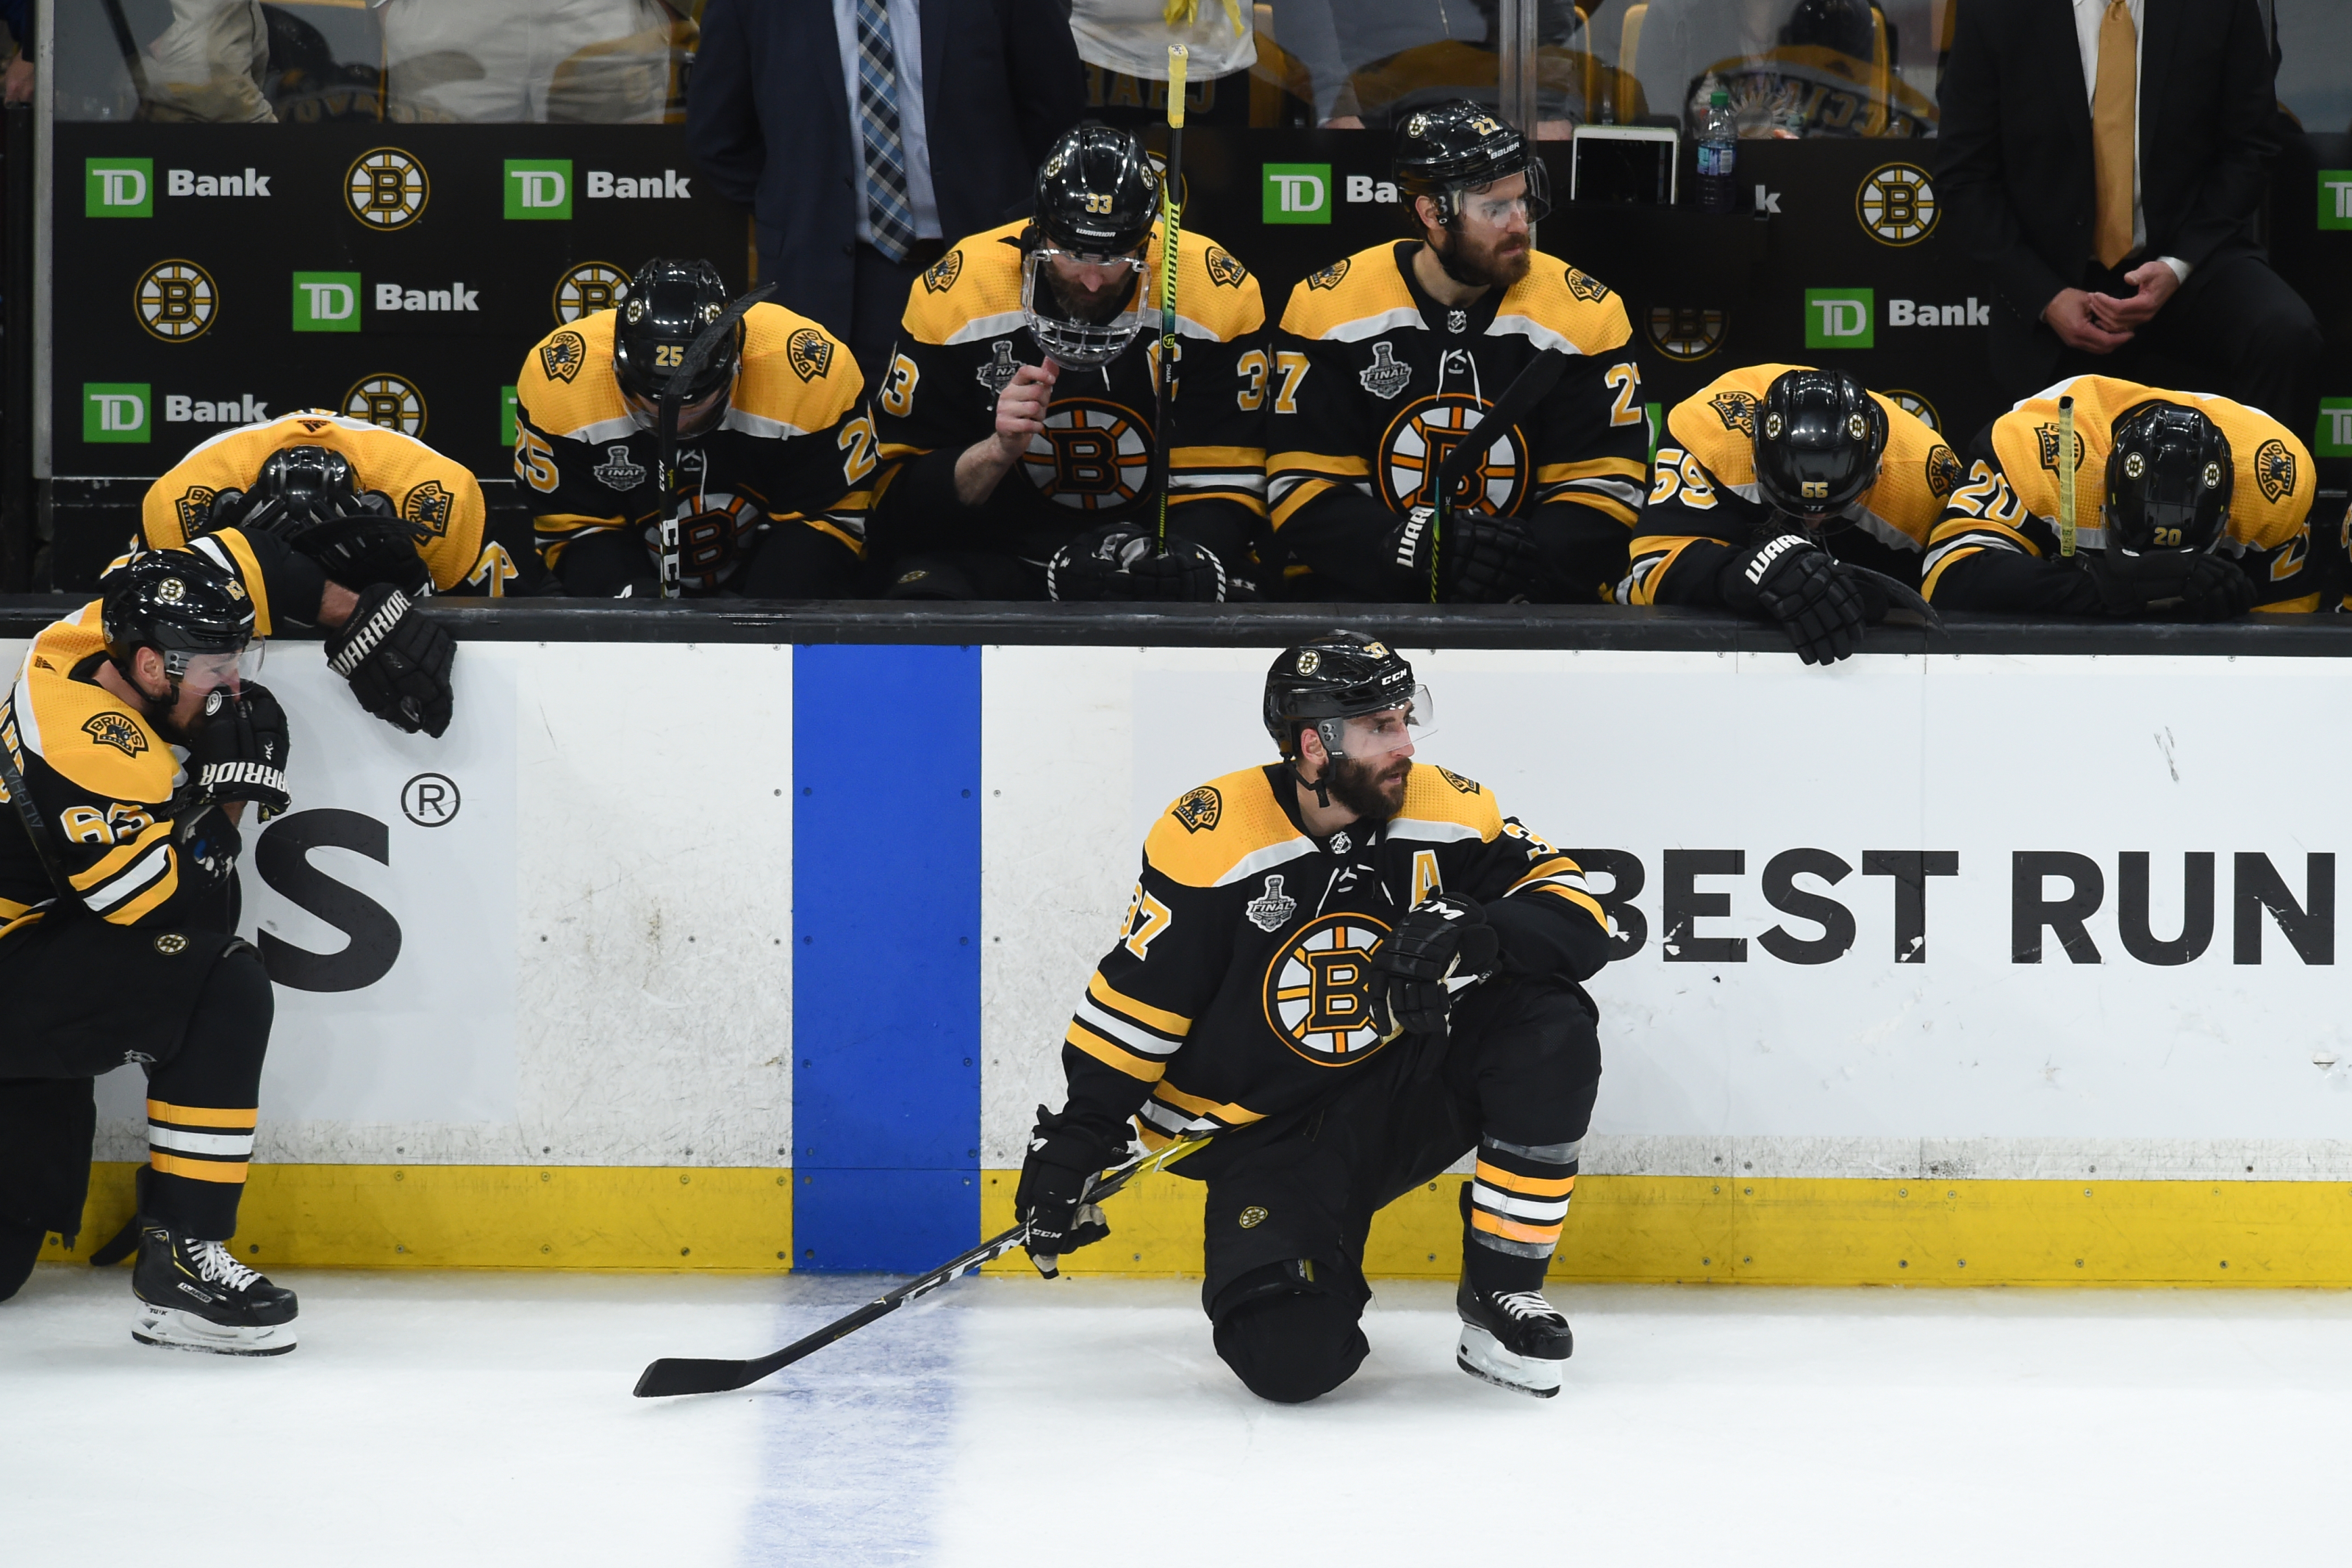 Bruins win Stanley Cup